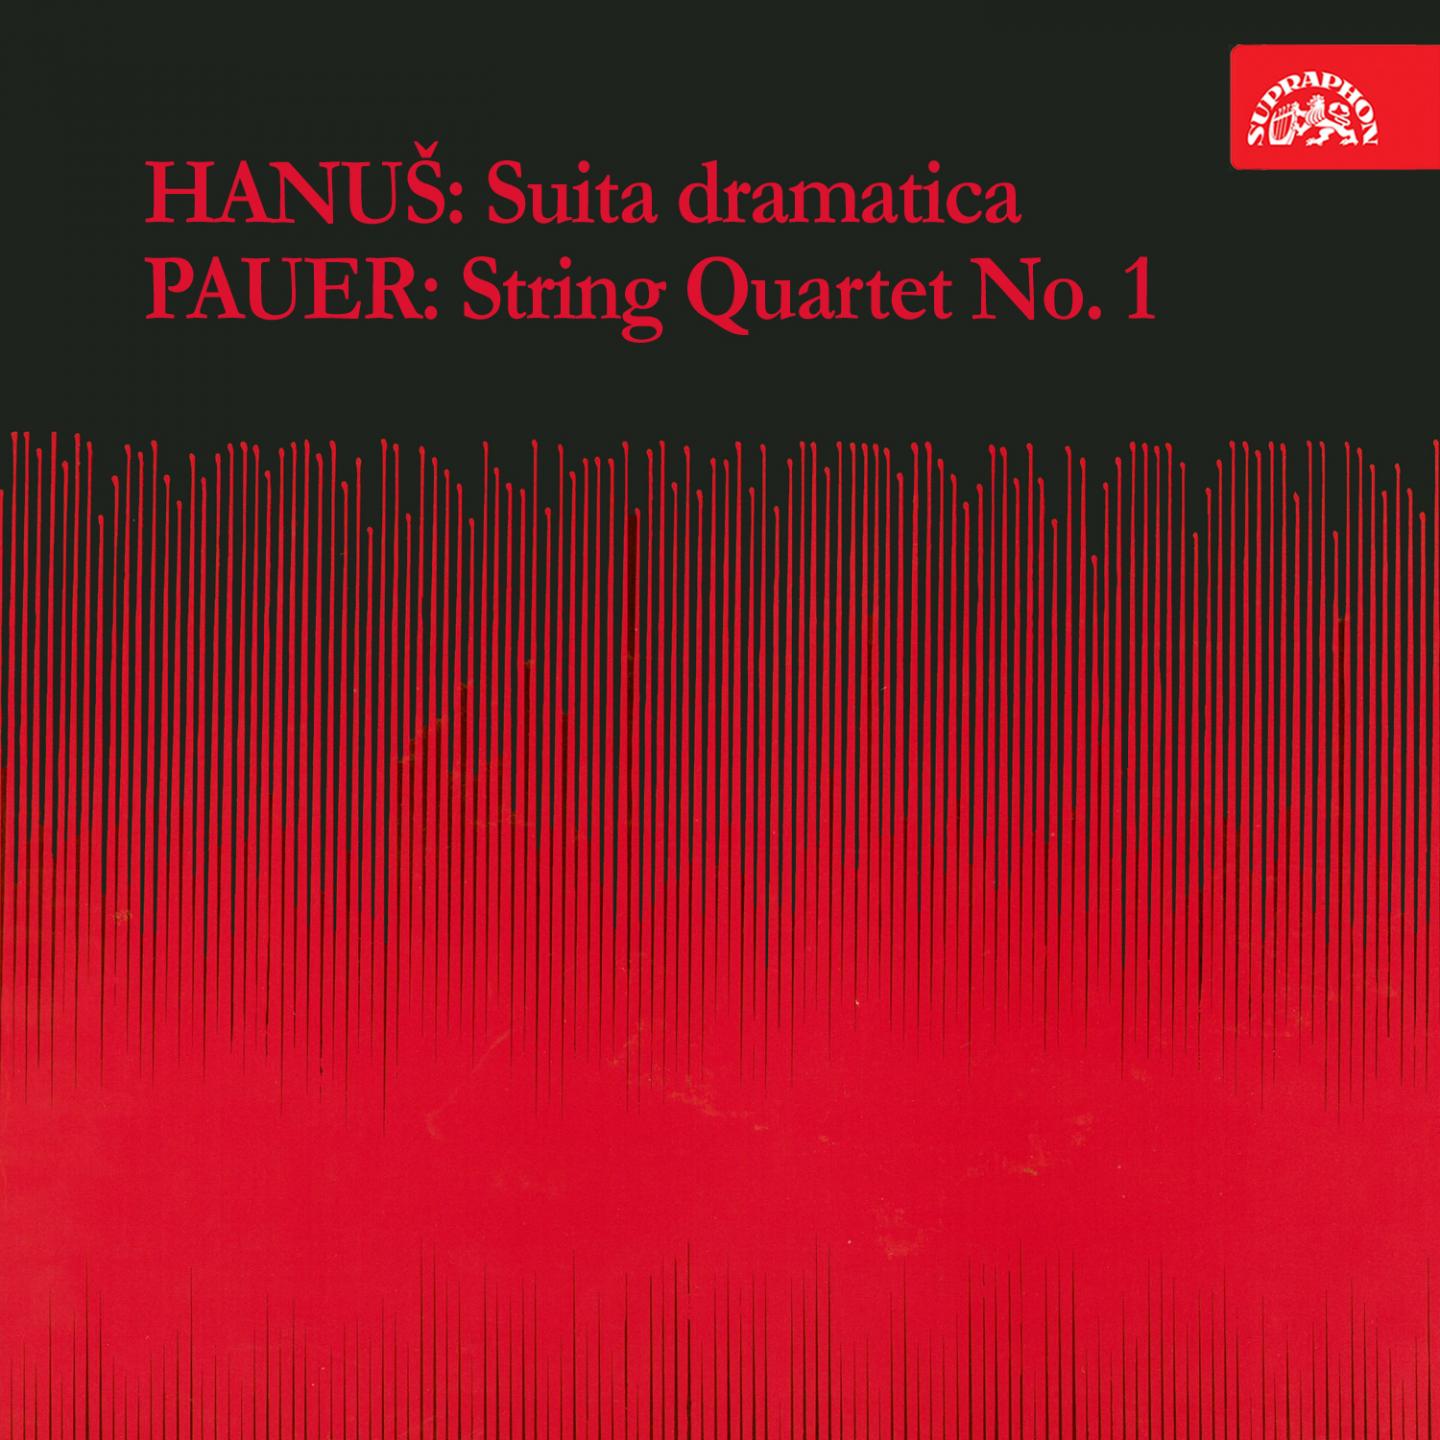 Hanu: Suita dramatica  Pauer: String Quartet No. 1